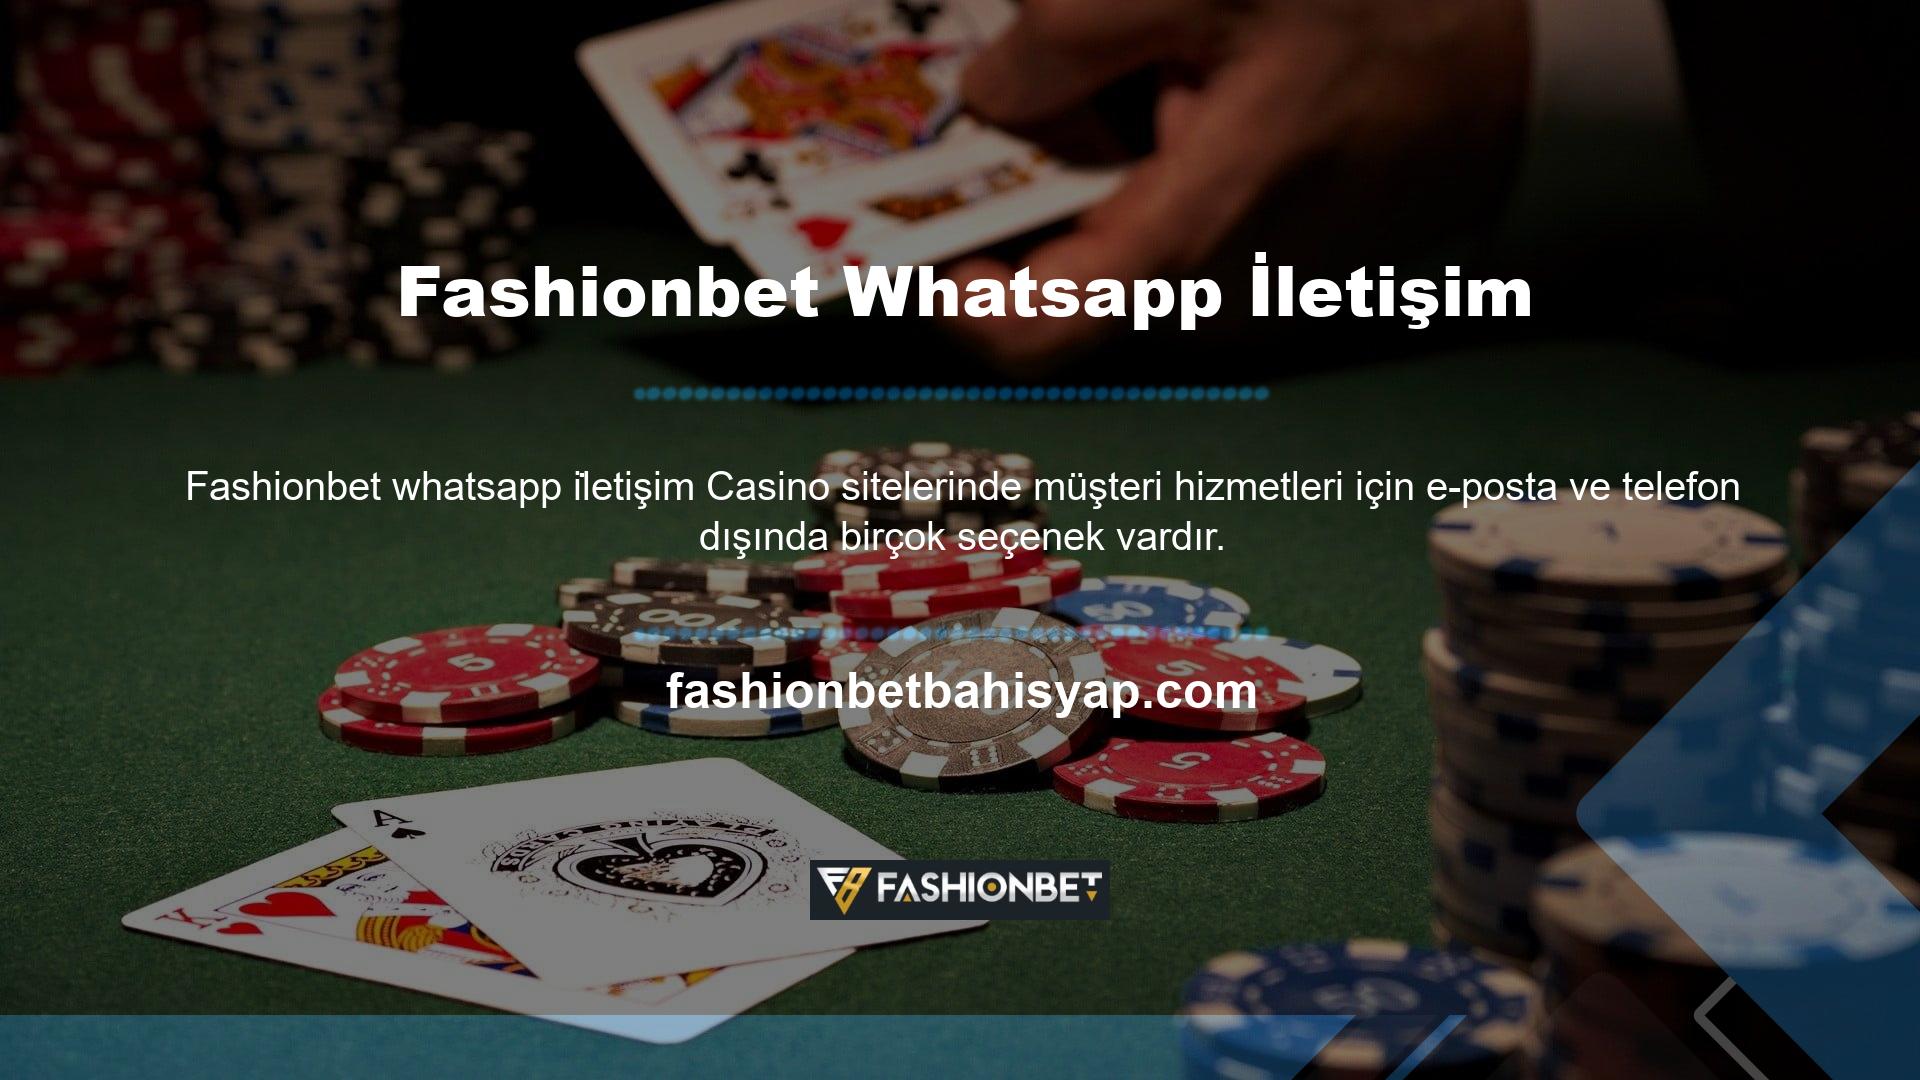 Fashionbet whatsapp iletişim